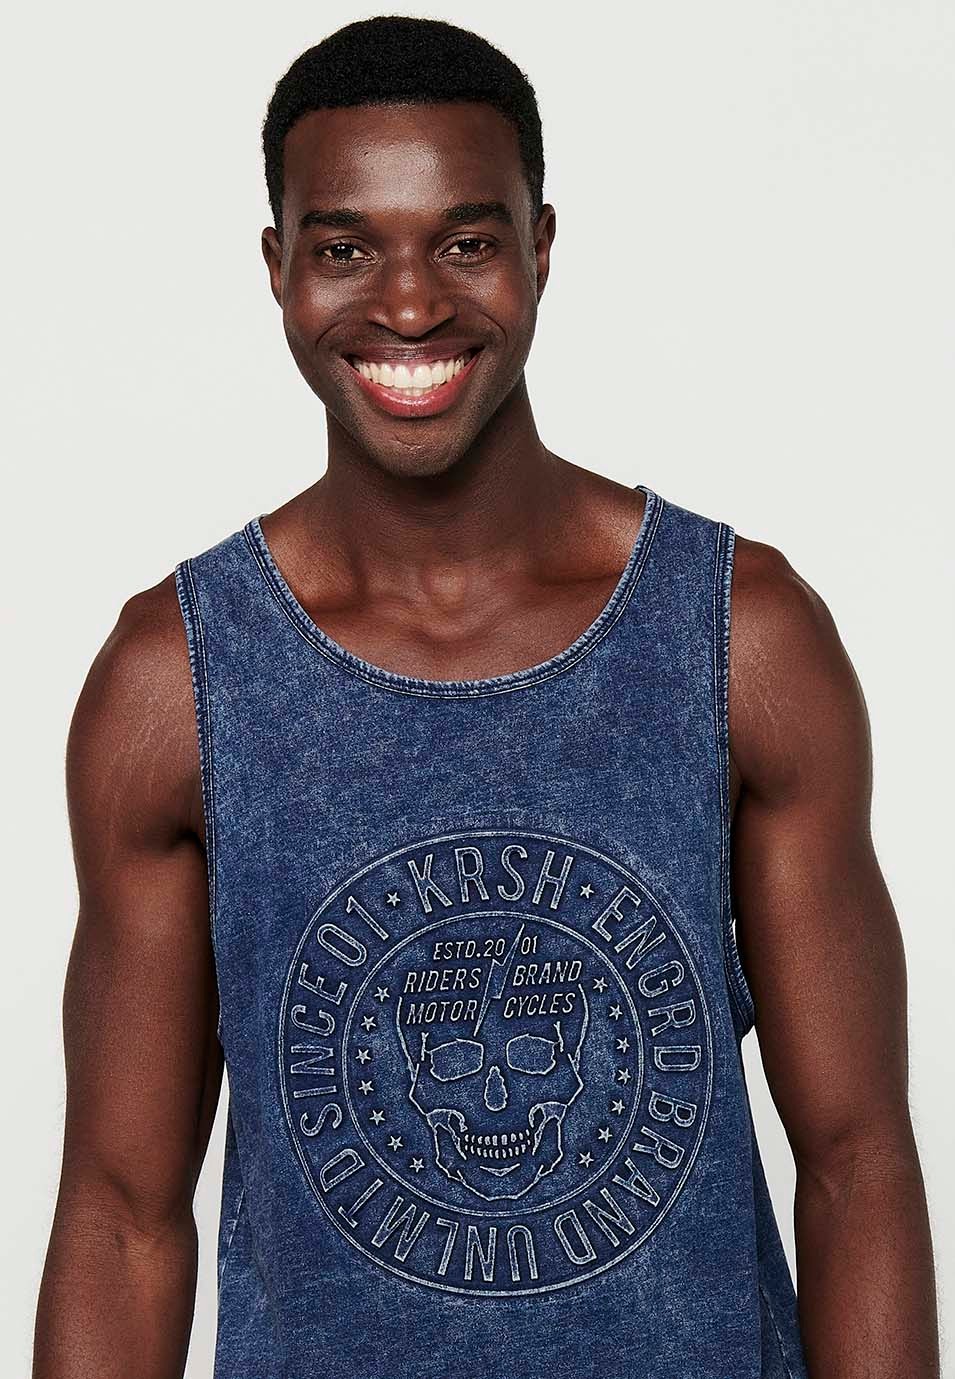 Camiseta sin mangas con efecto desgastado, color azul para hombres